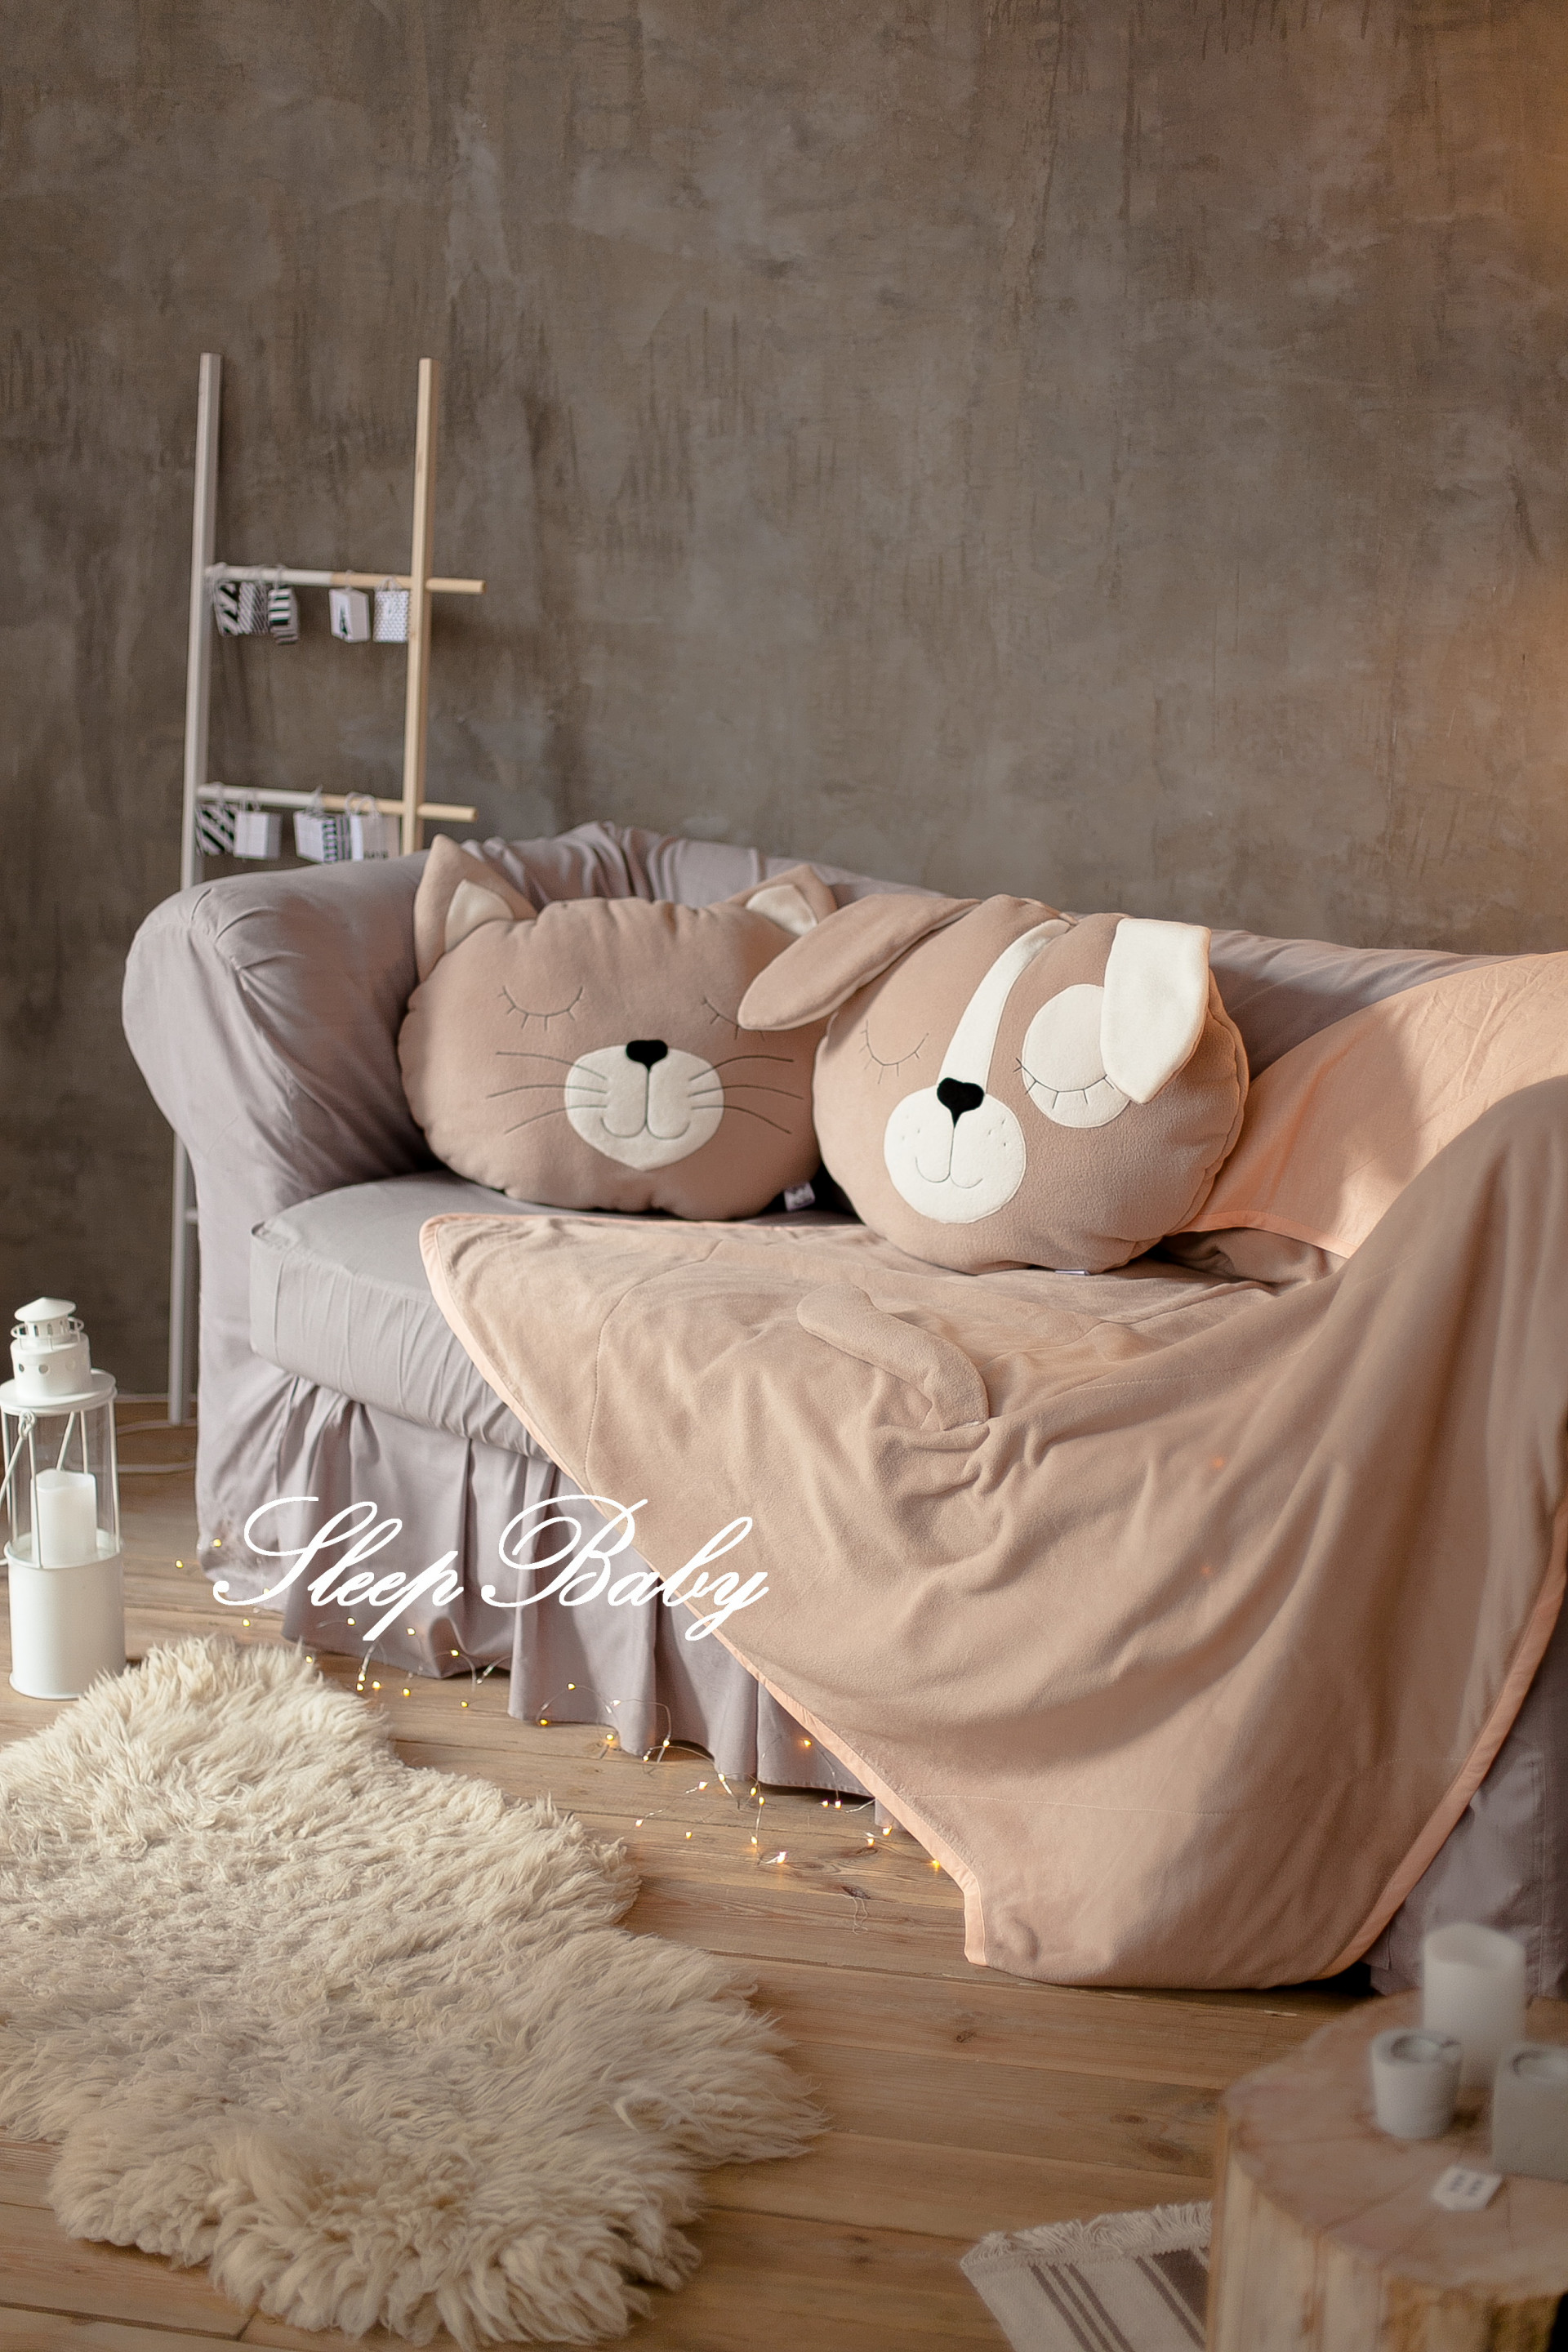 Одеяло + подушка SleepBaby Щенок